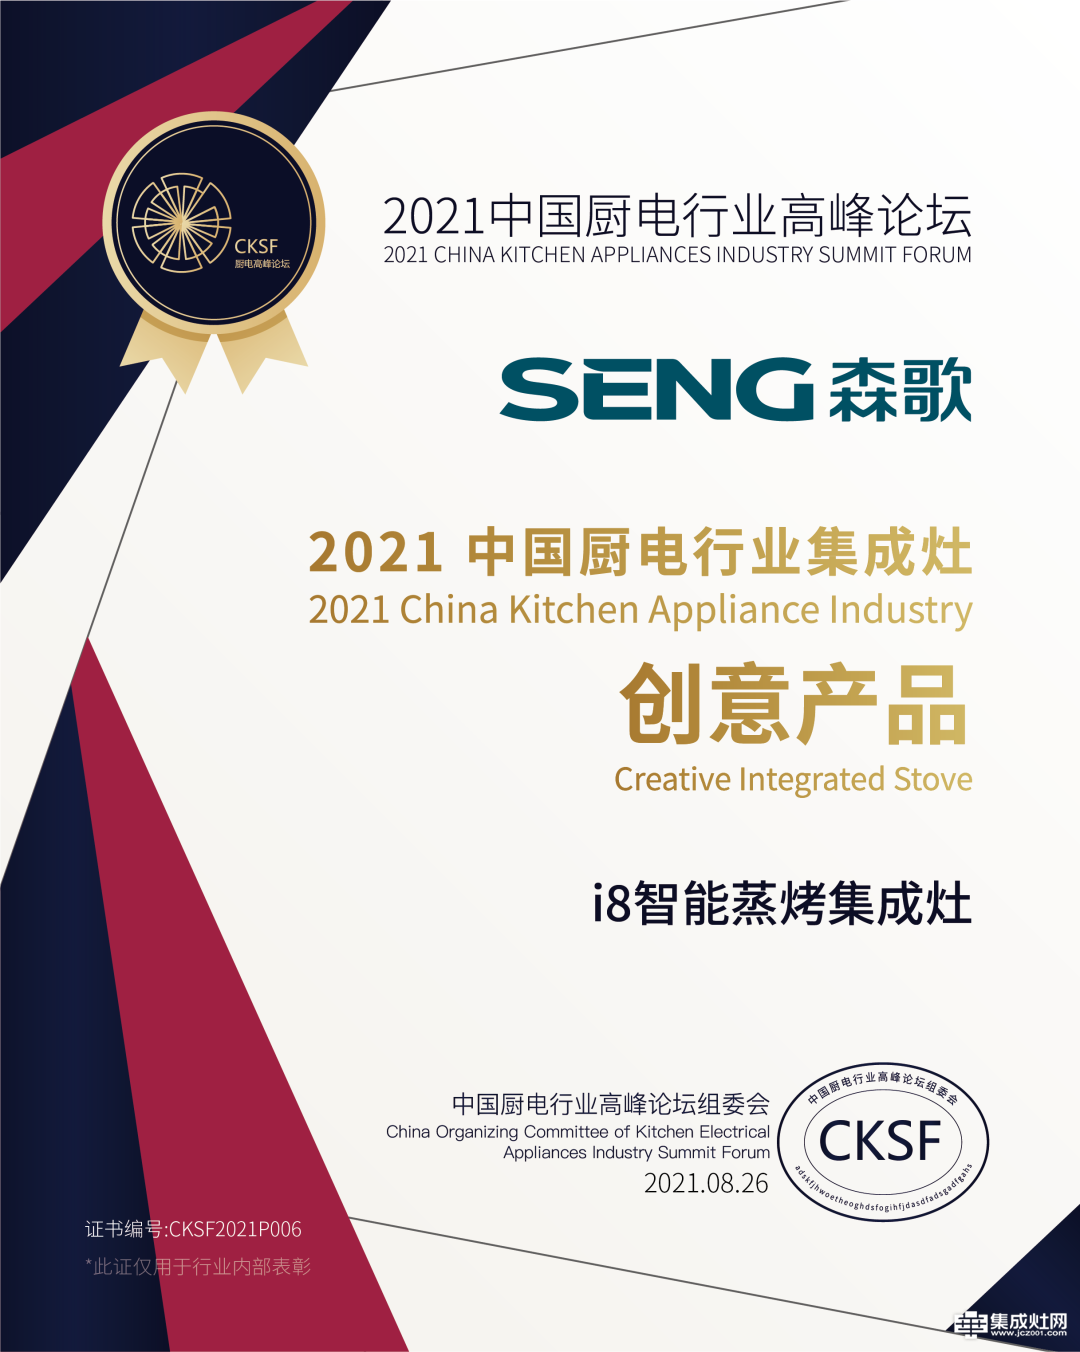 横扫中国厨电行业高峰论坛3项大奖 森歌电器以卓越科技彰显品牌力量